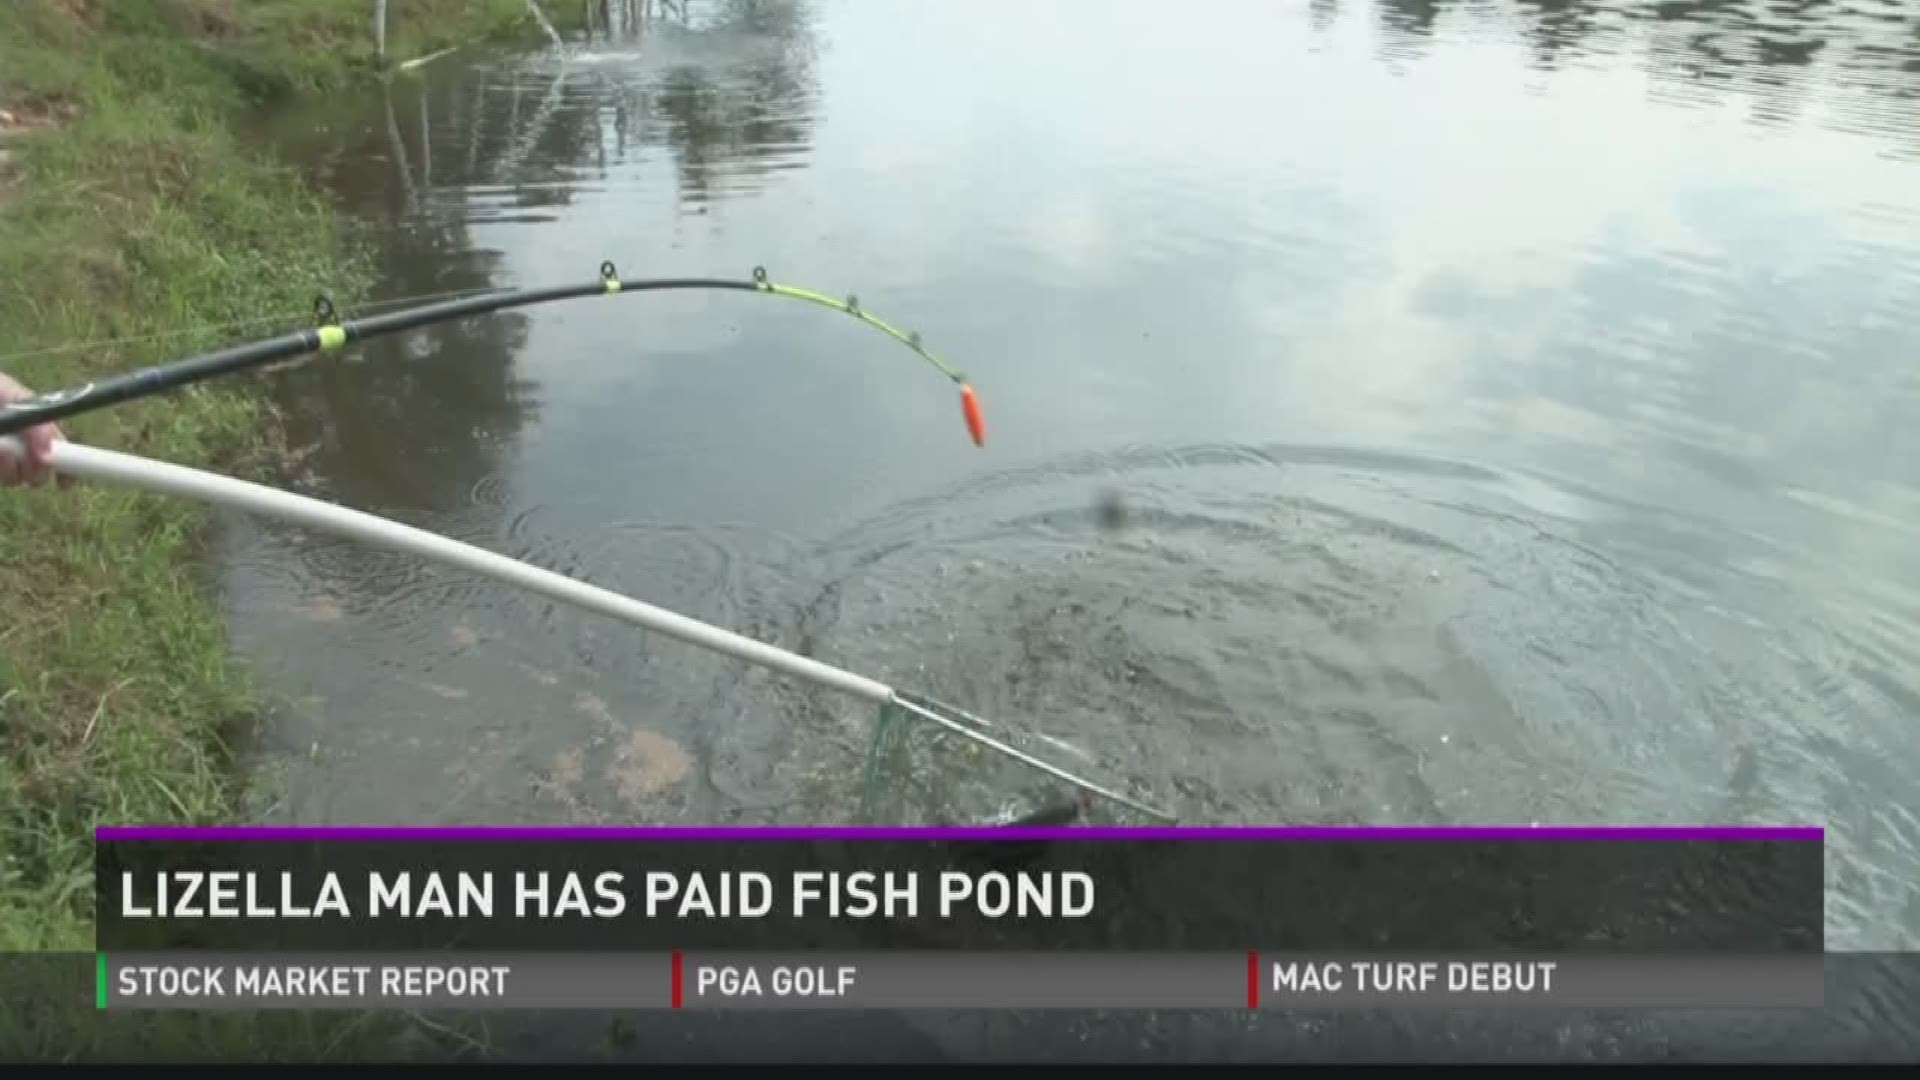 Lizella man has paid fish pond